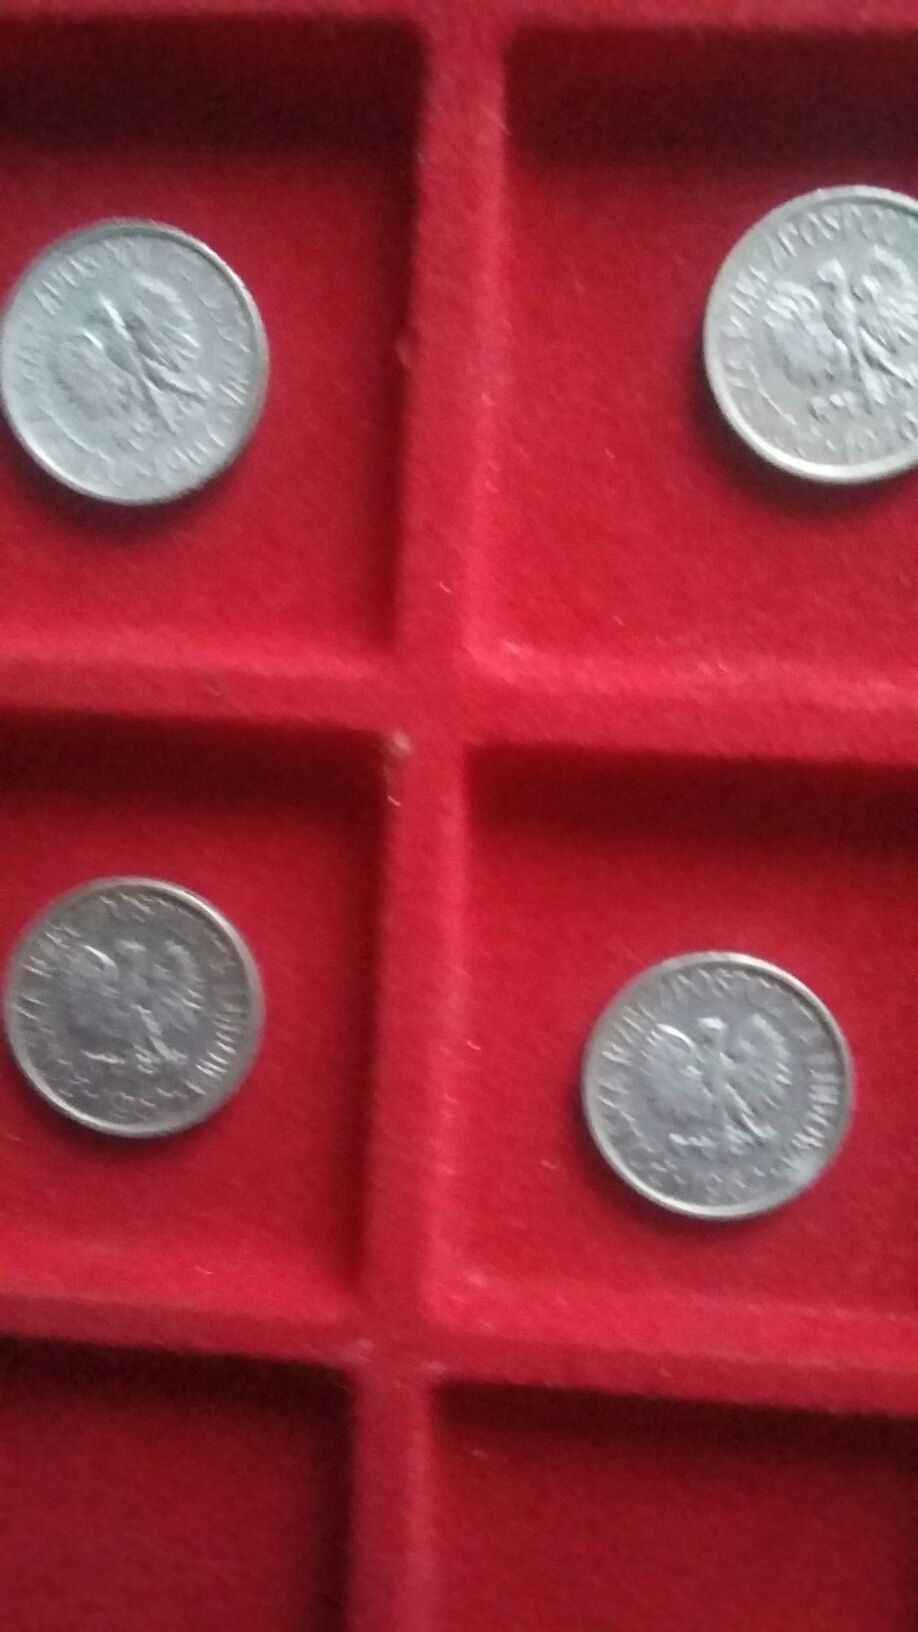 zestaw monet groszy PRL